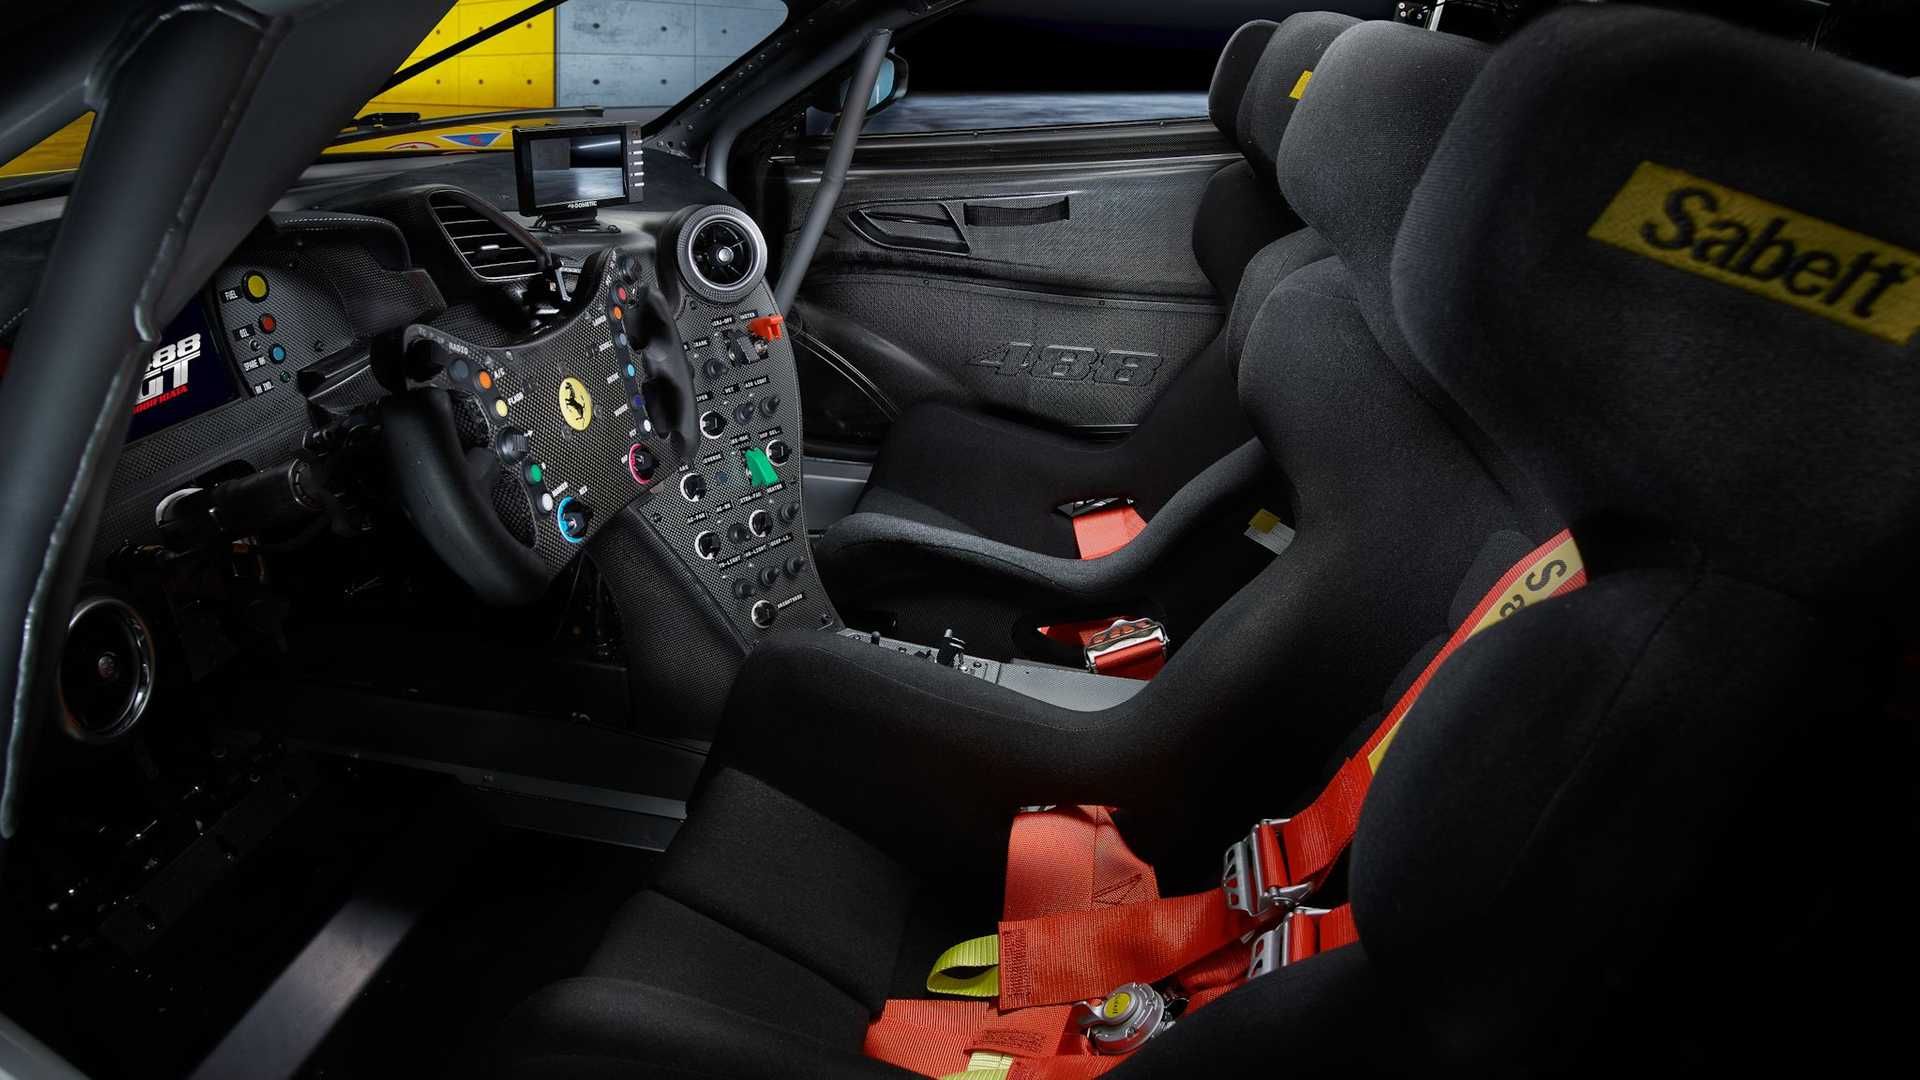 مرجع متخصصين ايران Ferrari 488 GT Modificata فراري 488 موديفيكاتا